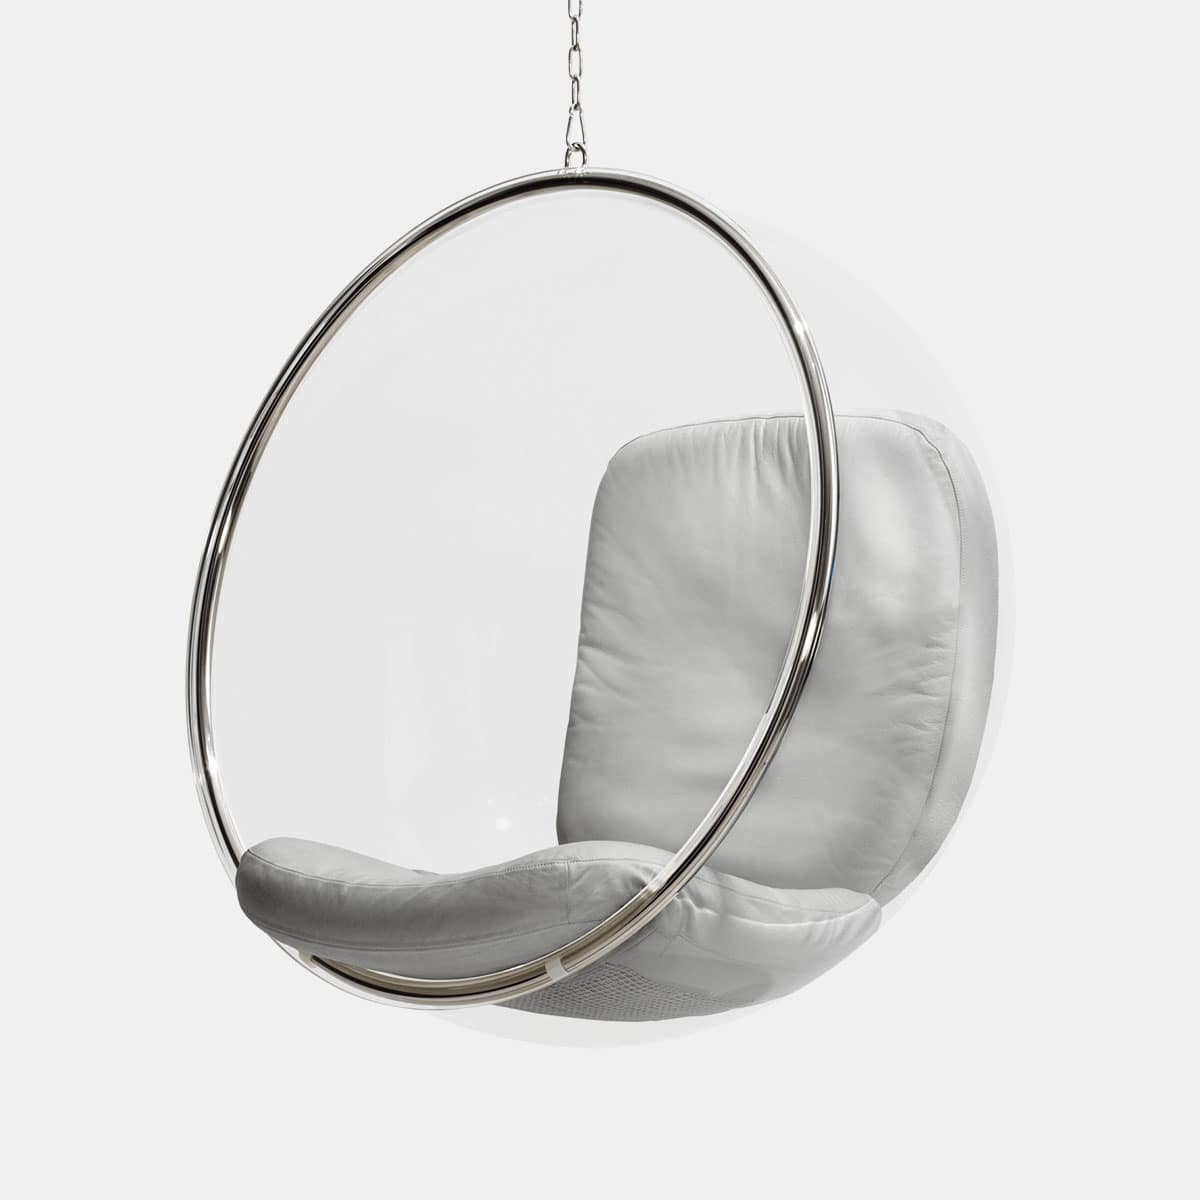 aarnio-originals-eero-aarnio-bubble-chair-leder-zilver-001shop